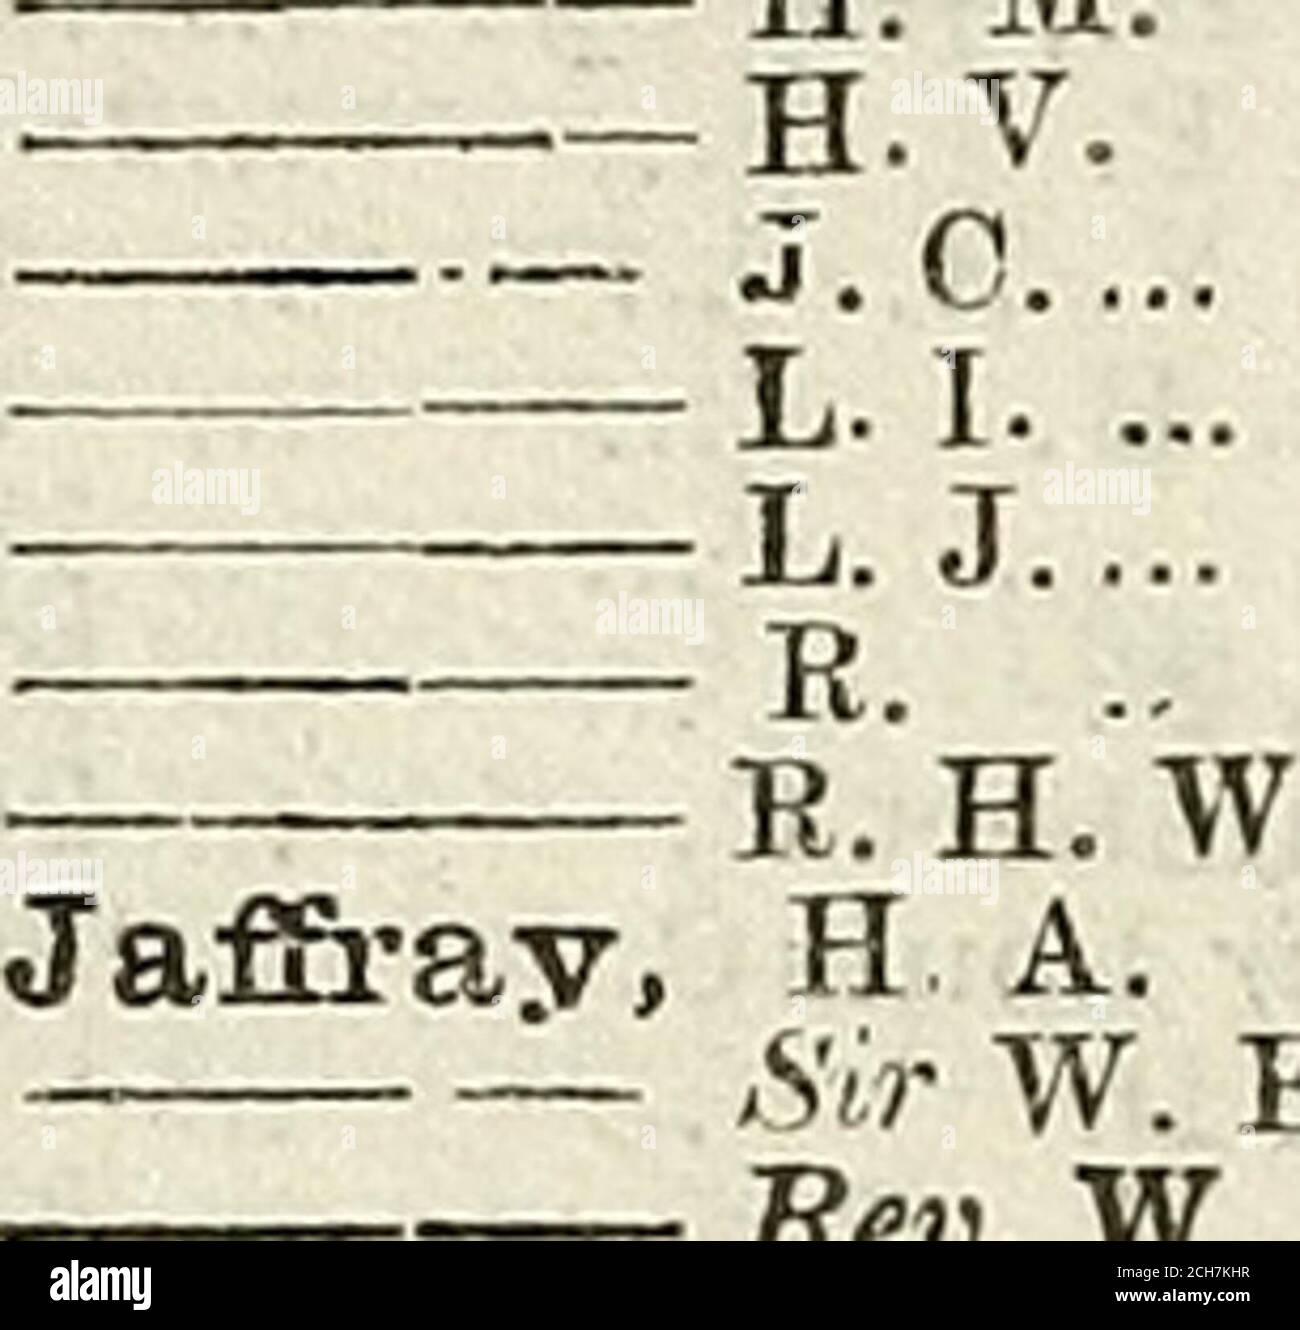 Army list . Jacobs-Iiarcom, B.H.L t Jacomb, C. A F. B. W. .. T.J Jacot, B.  L Jacques, A H. M. H.V.. □ — .Sir W. B.Bev. W. S. ... 1641...